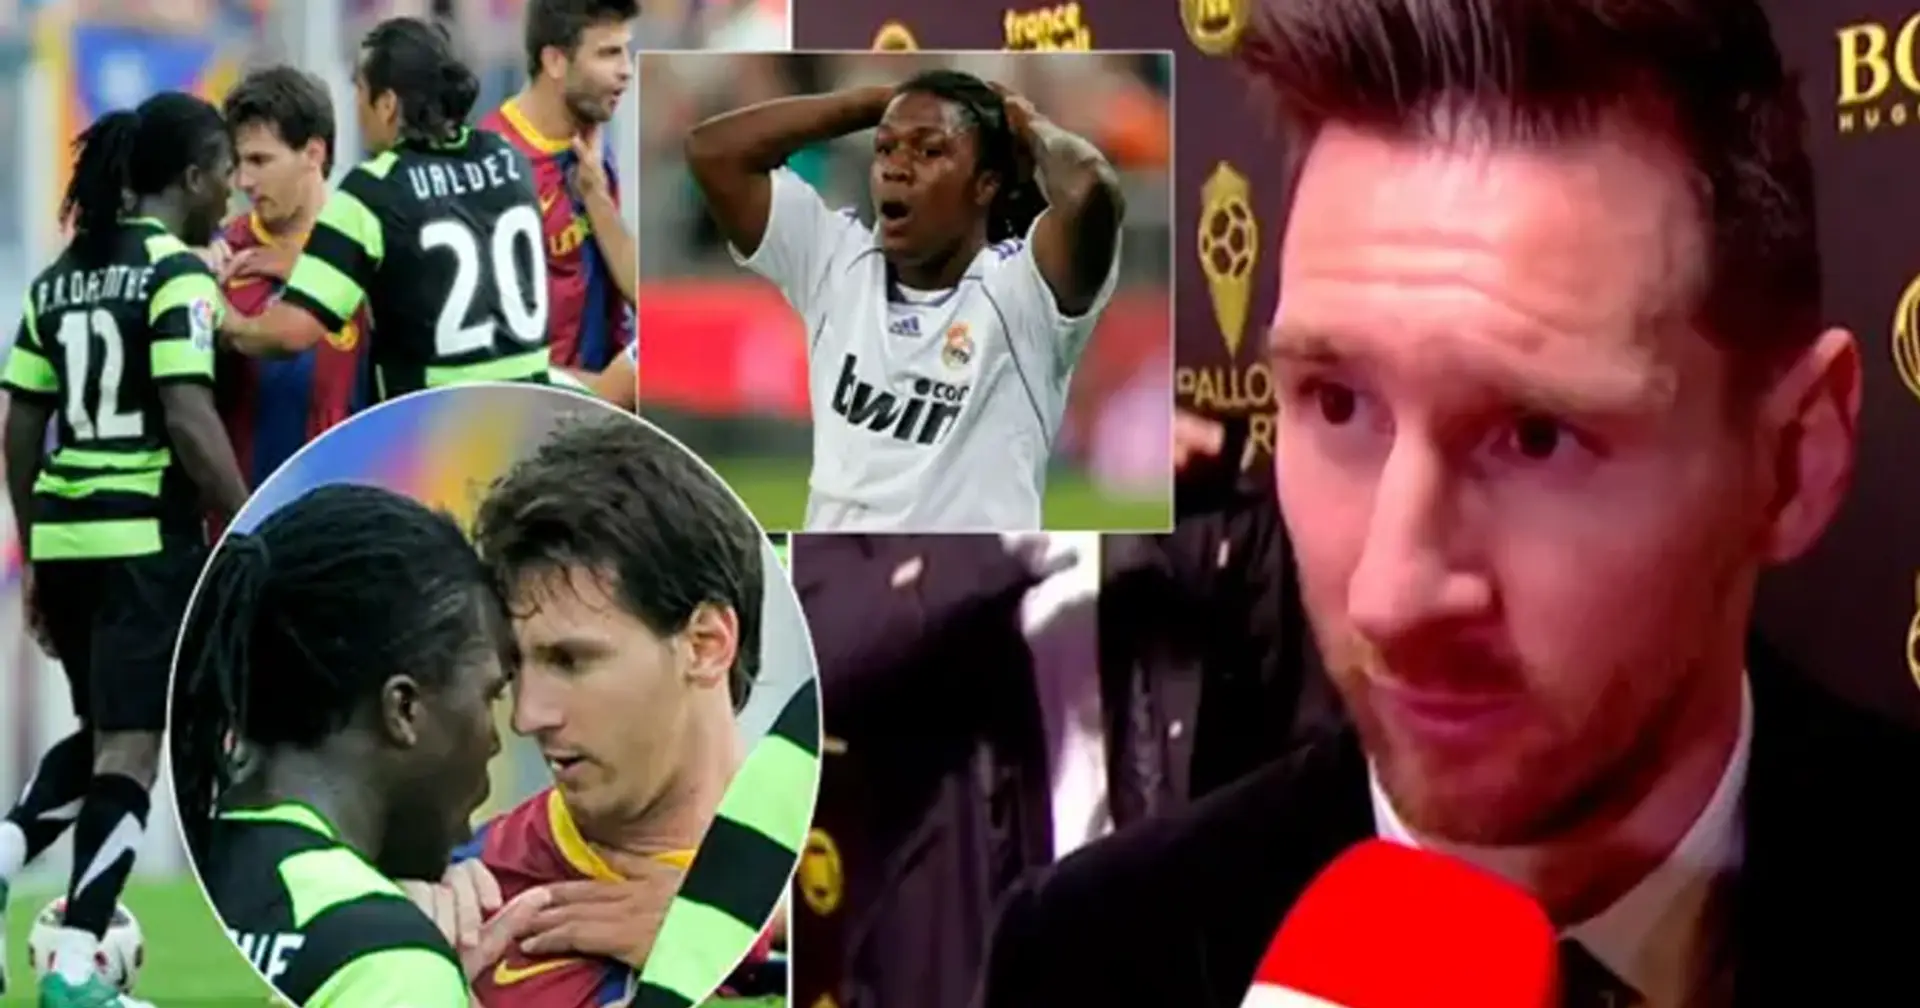 'Siempre tenemos problemas entre nosotros': por qué Drenthe acusó a Leo Messi de racista